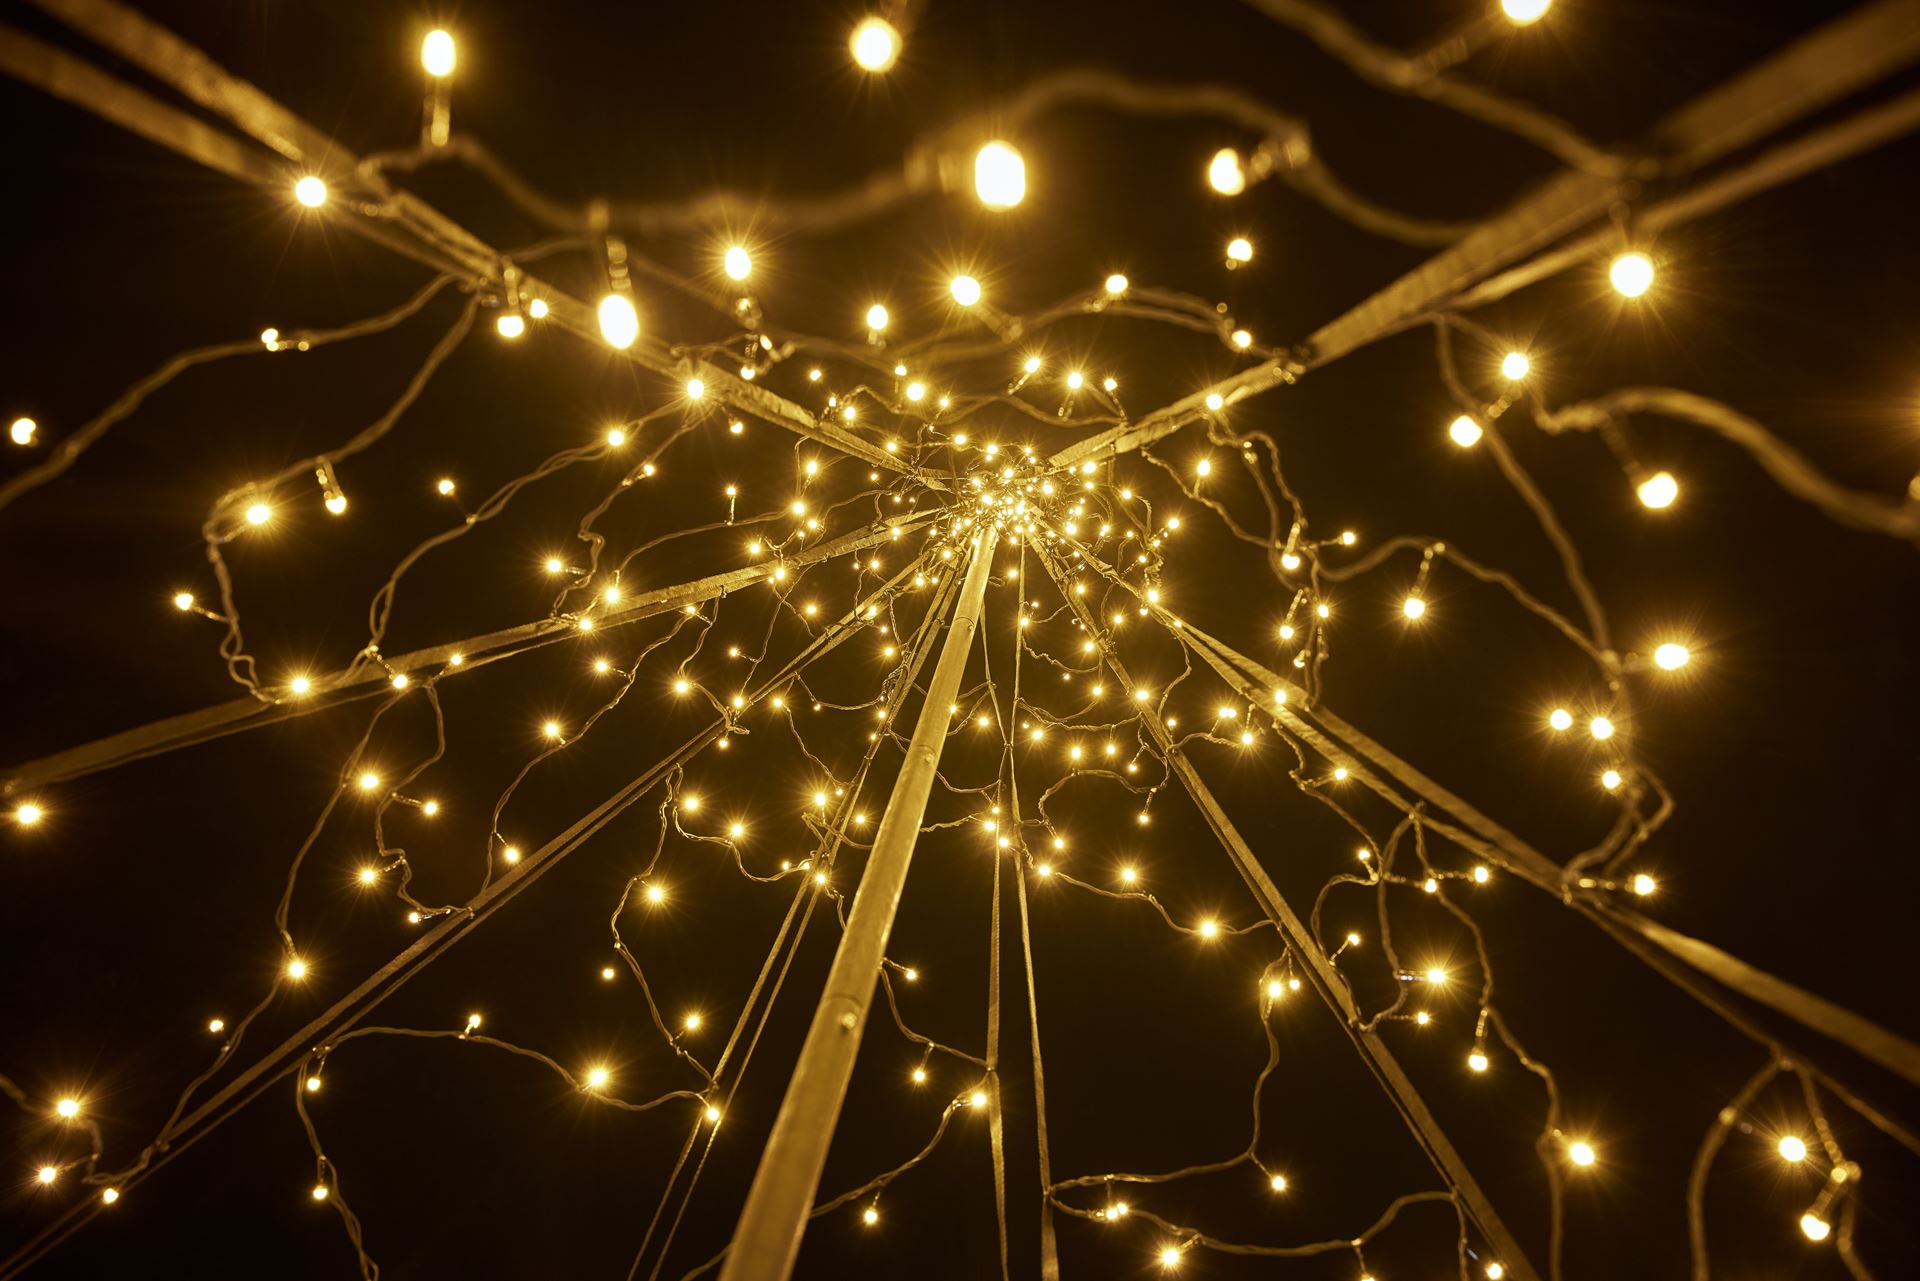 Fairybell-kerstverlichting-kerstboom-buiten-met-vlaggenmast-400CM-hoog-640-LED-lampjes-in-warmwitte-